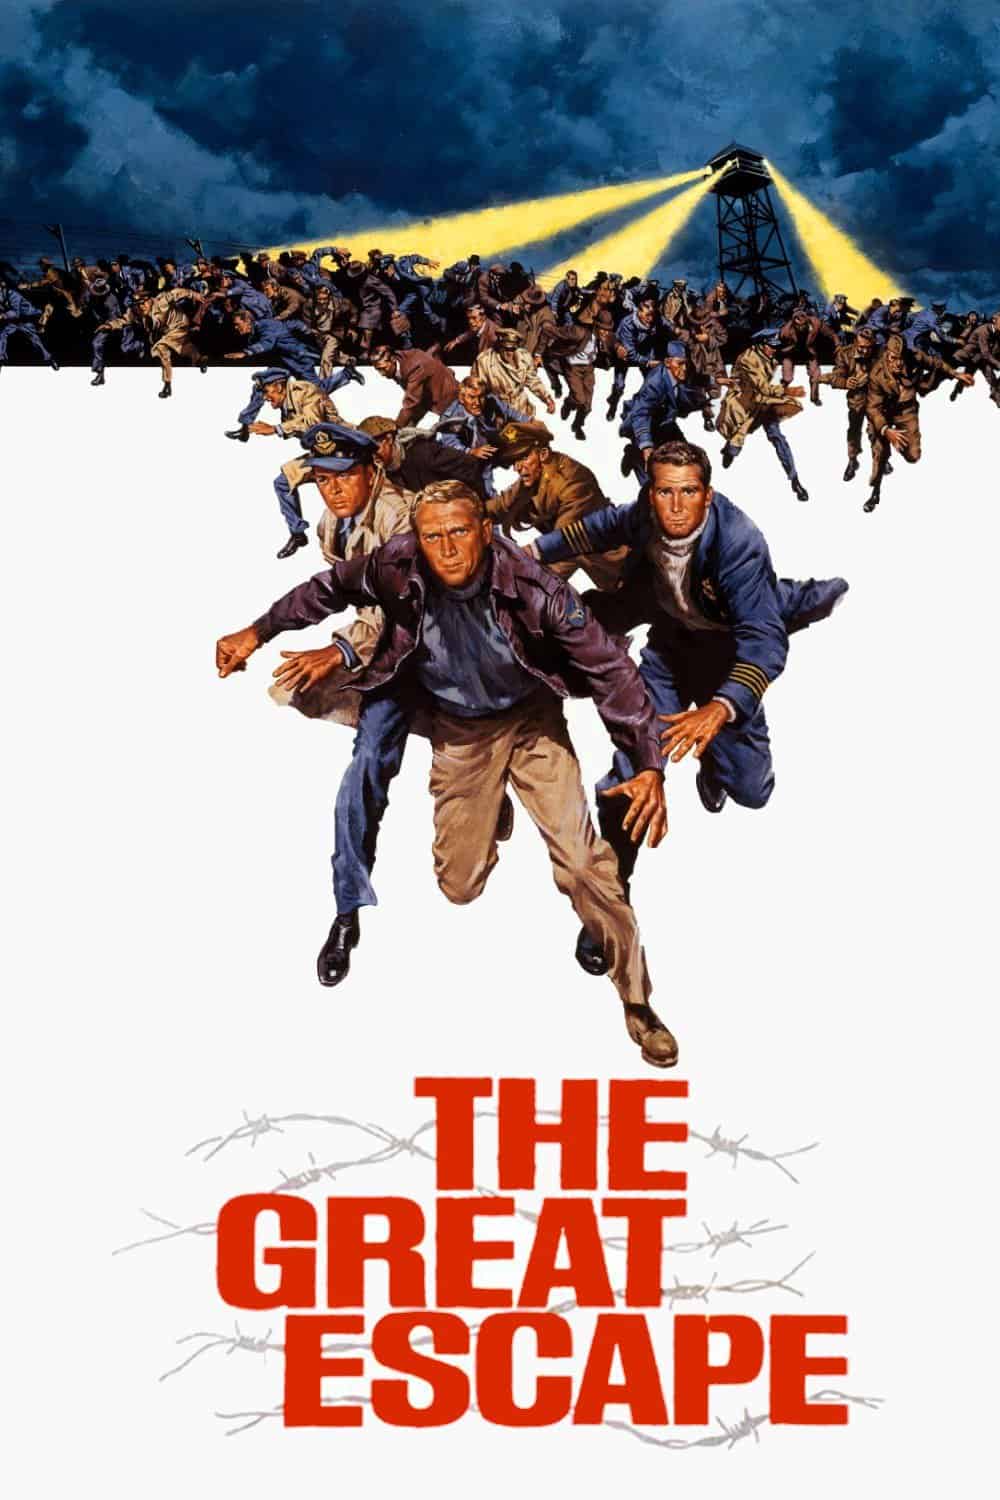 The Great Escape,1963